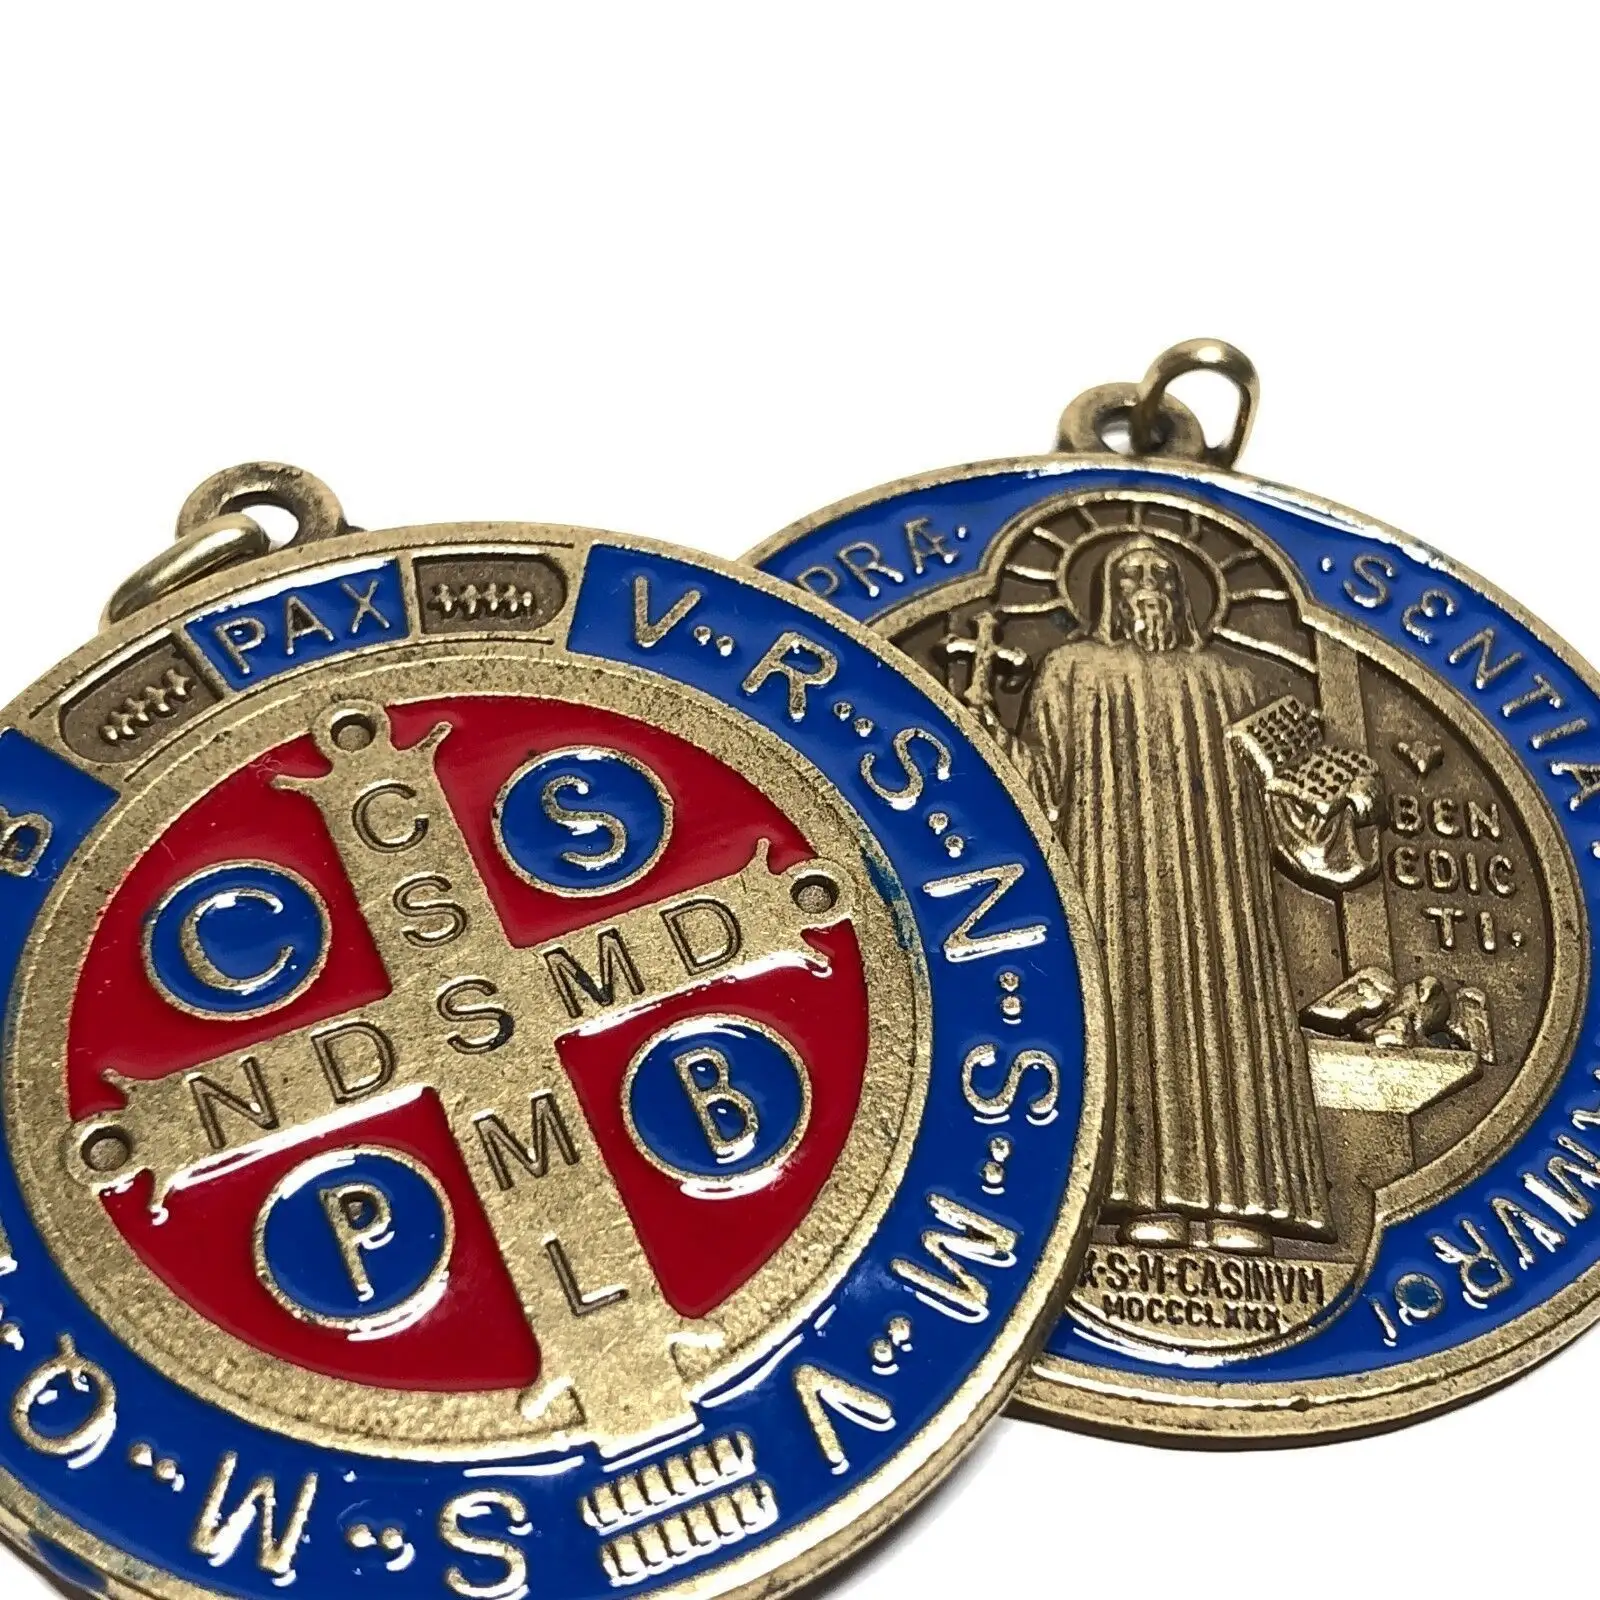 Medali Natal enamel biru dan merah hadiah semangat UNTUK LIBURAN dan pernikahan salib arketisan medali Paus memberkati St Benedict medali Dinding